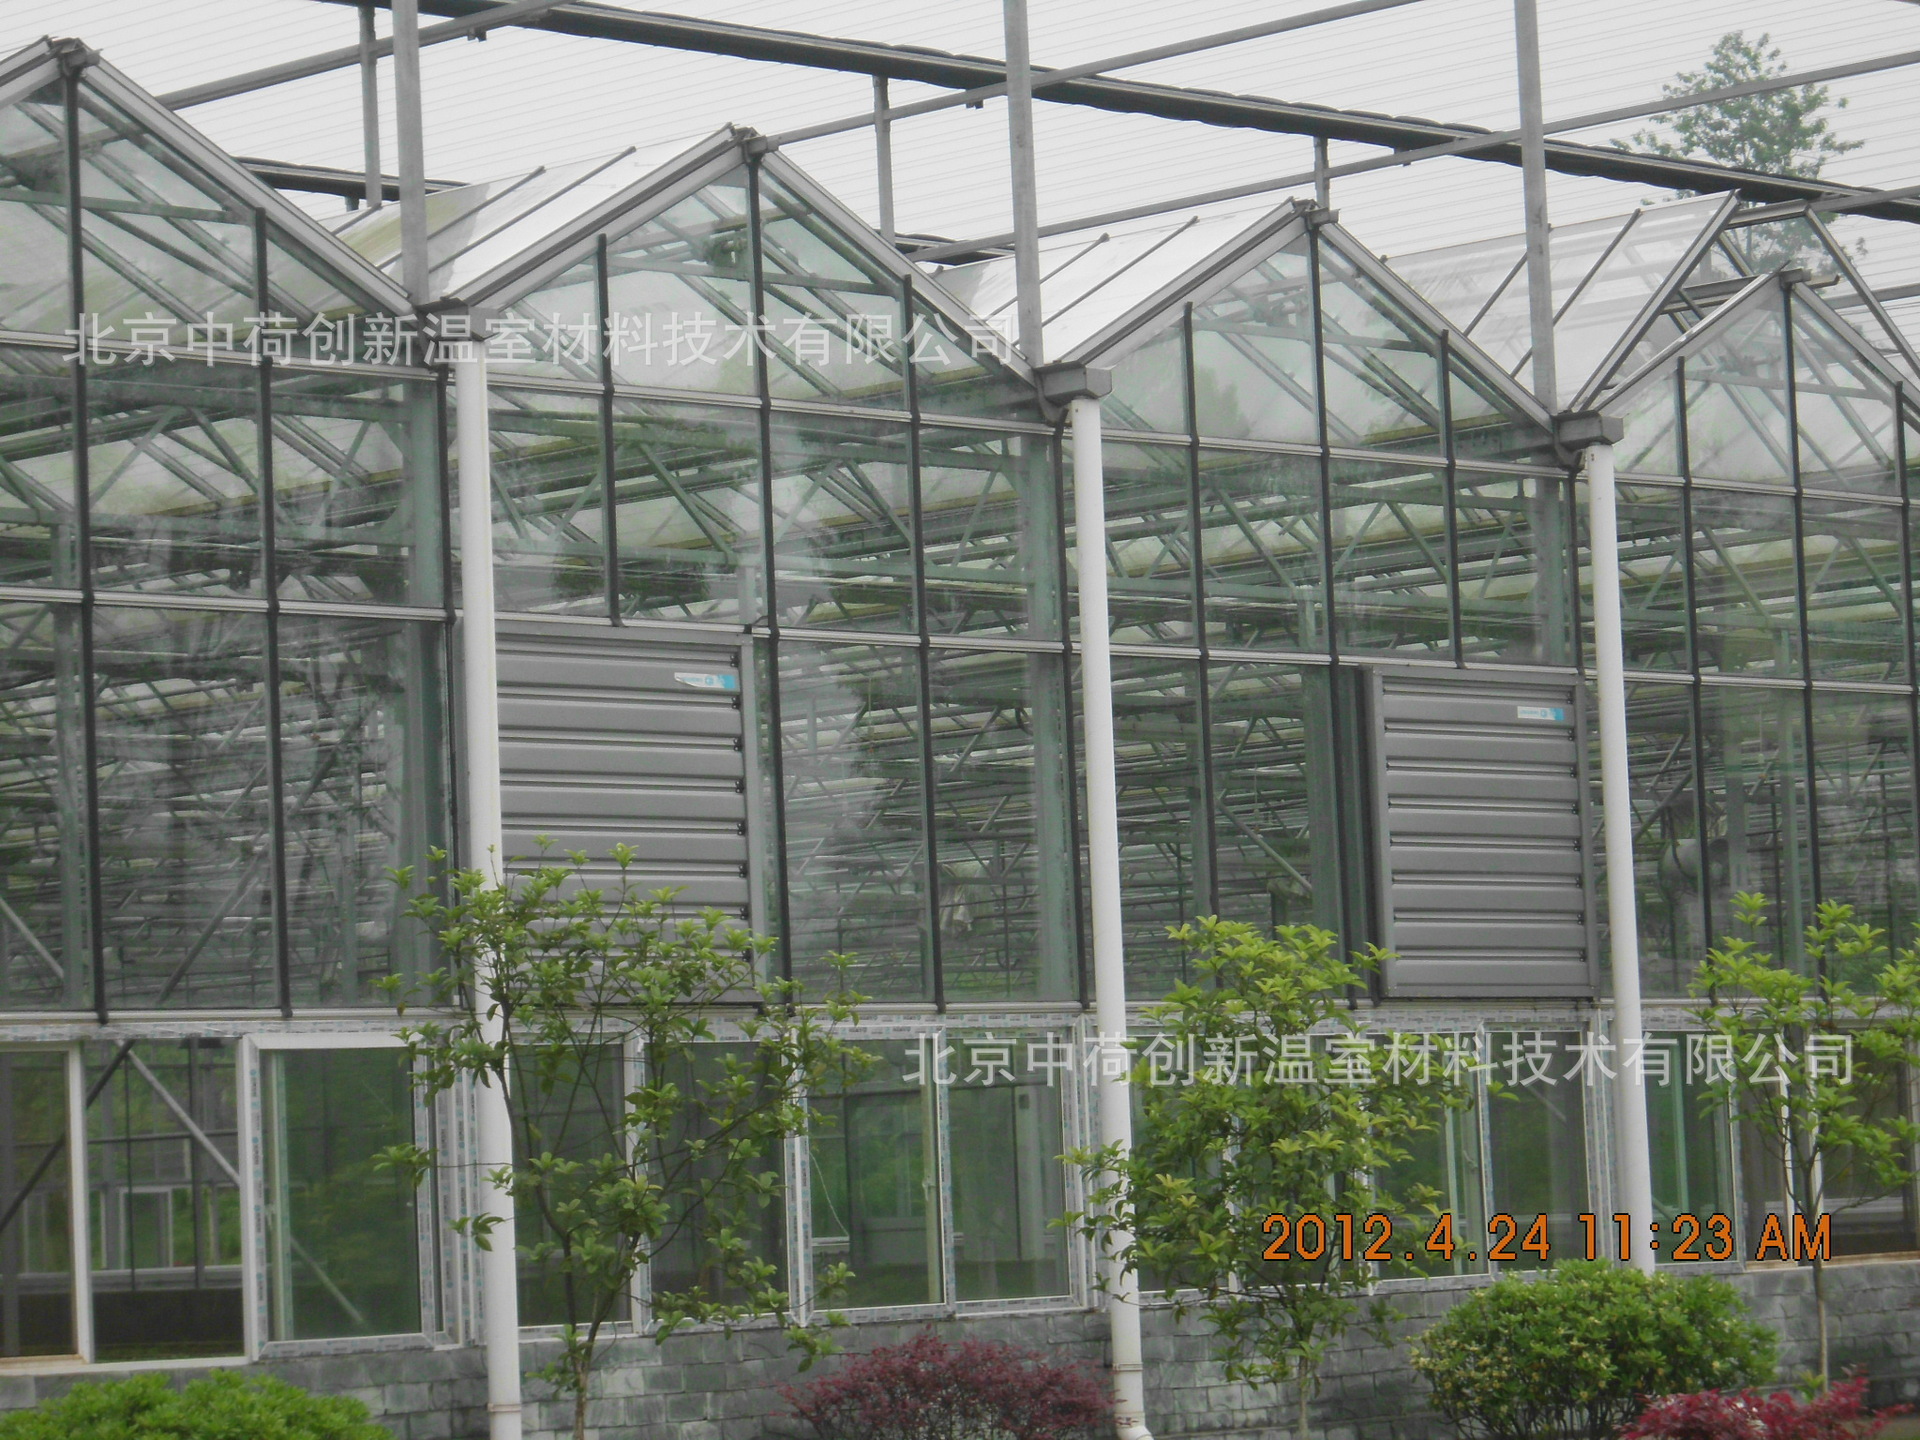 钢结构蔬菜水果温室玻璃顶种植大棚农业生态园农庄SU模型sketchup示例图7